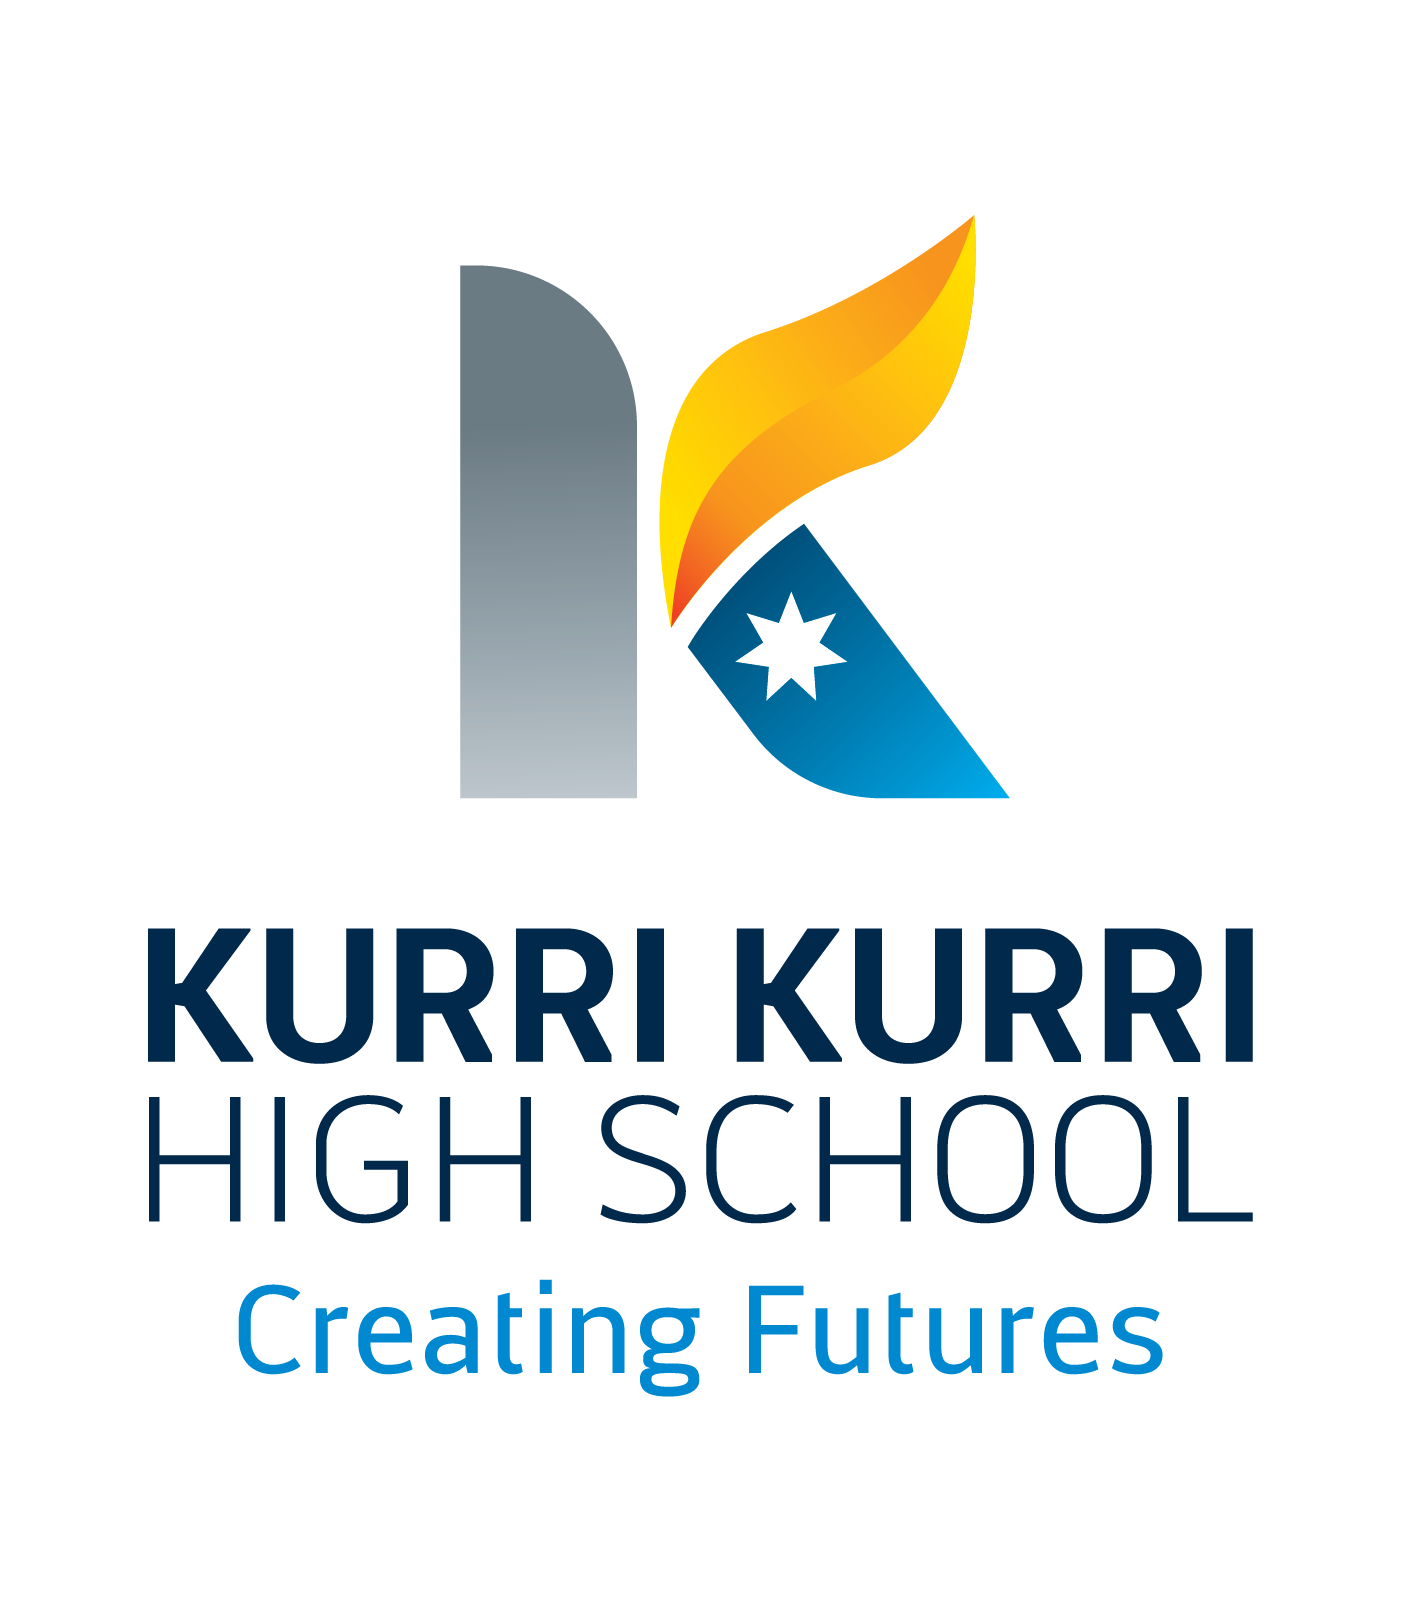 Kurri Kurri High School, Kurri Kurri, NSW